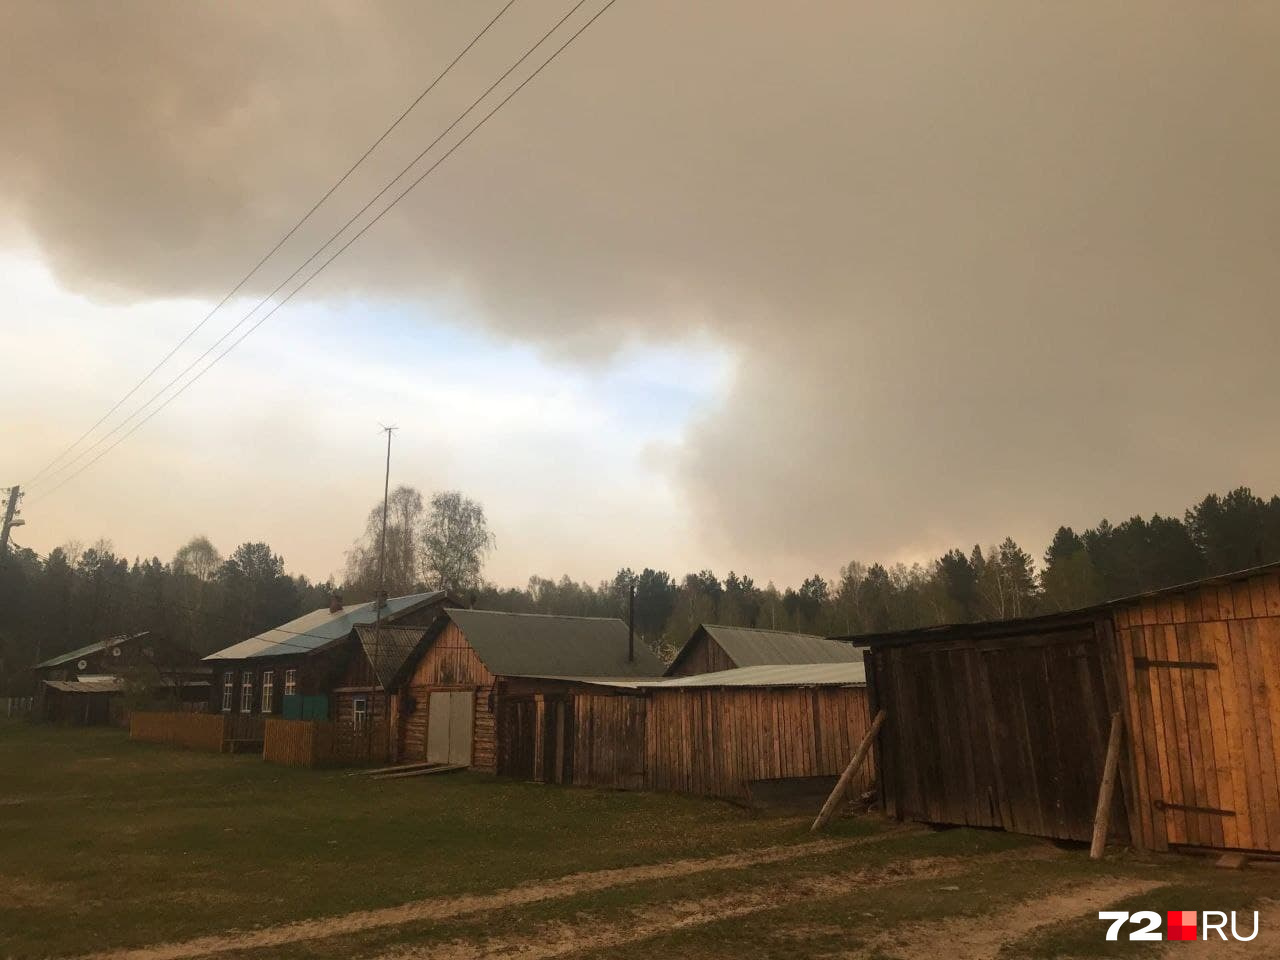 Поселок заволокло дымом от горящих лесов